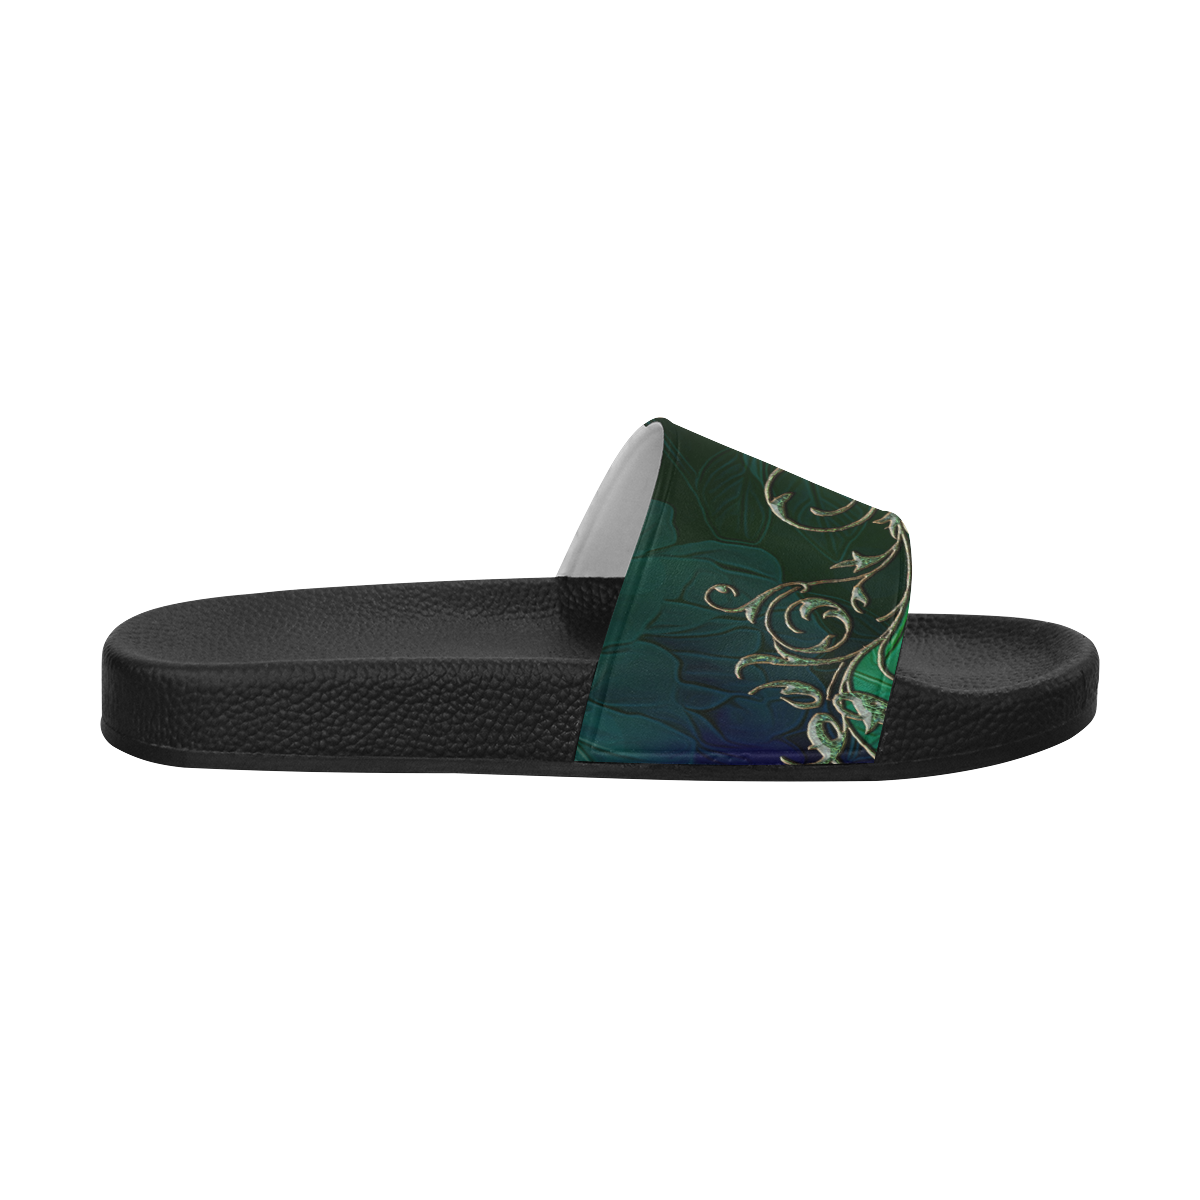 Green floral design Women's Slide Sandals (Model 057)